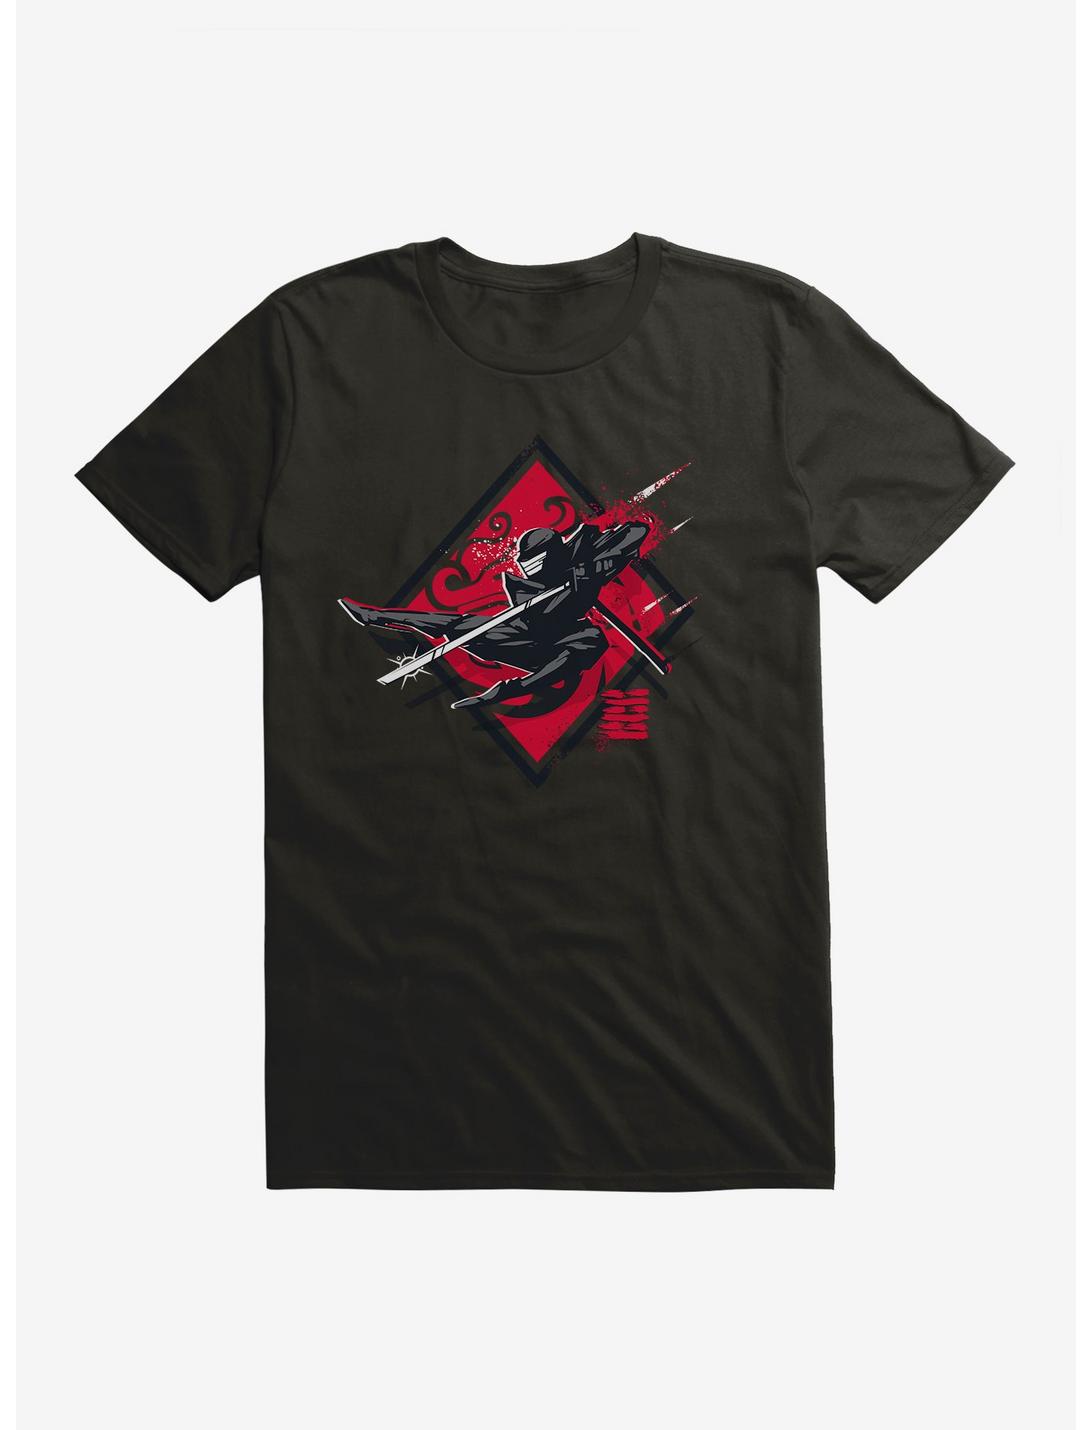 G.I. Joe Snake Eyes Jump Attack T-Shirt, , hi-res